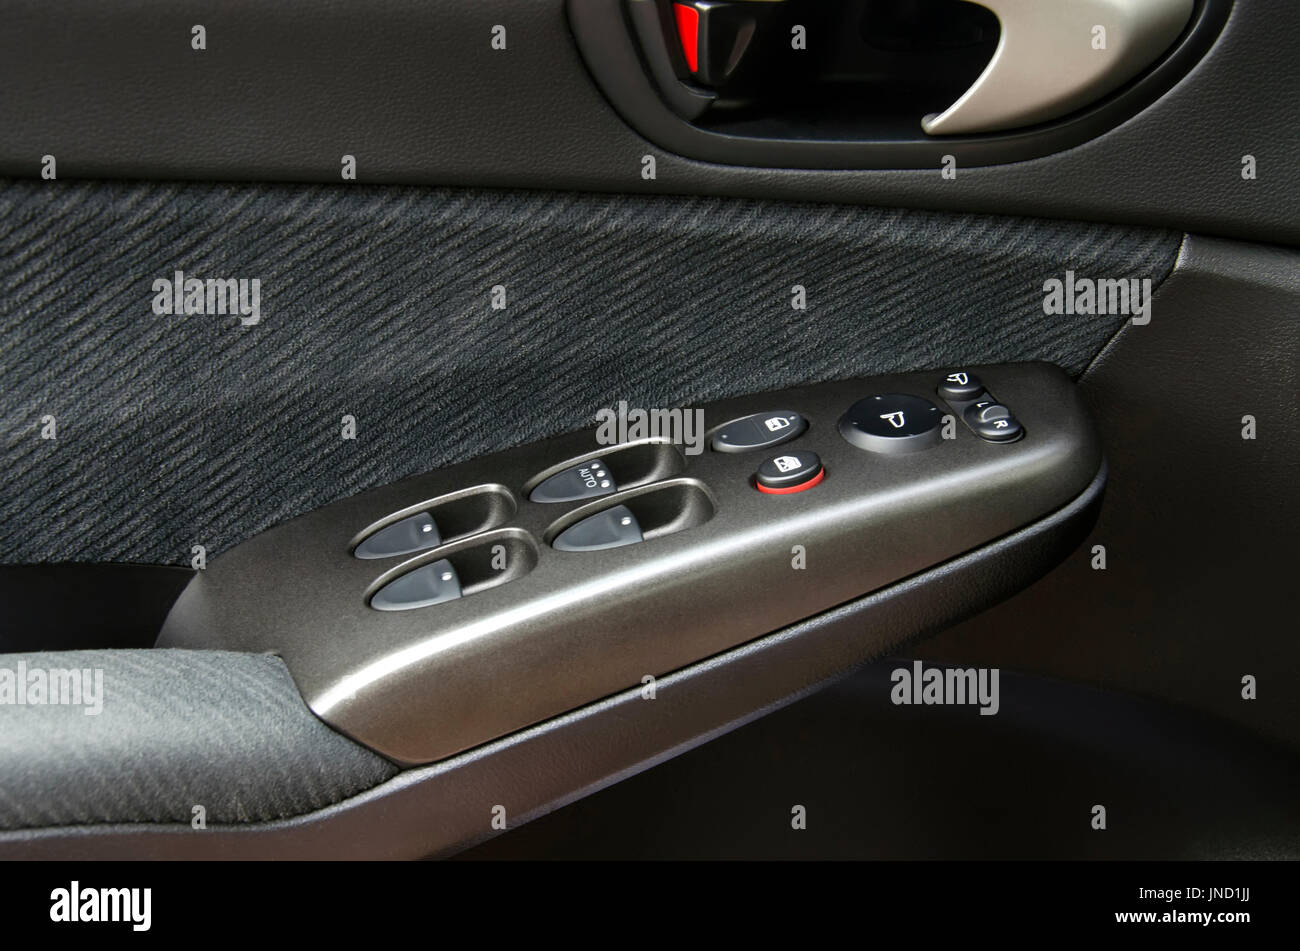 Auto Armlehne mit Fenster-Bedienelemente Stockfotografie - Alamy